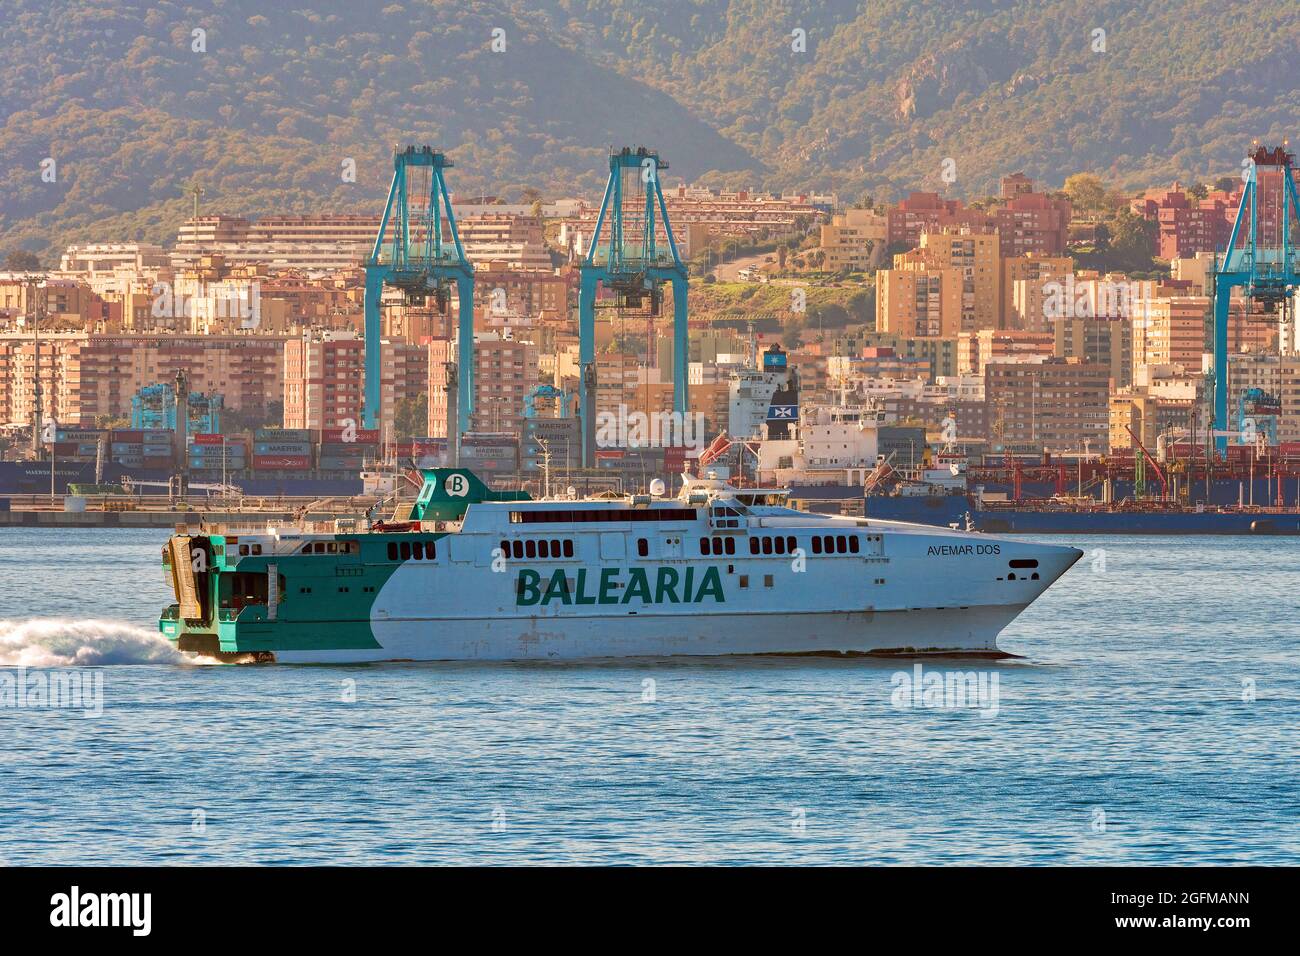 Avemar Dos è un traghetto veloce costruito in Austal, gestito da Balearia sulla rotta Algeciras Ceuta - Novembre 2018. Foto Stock